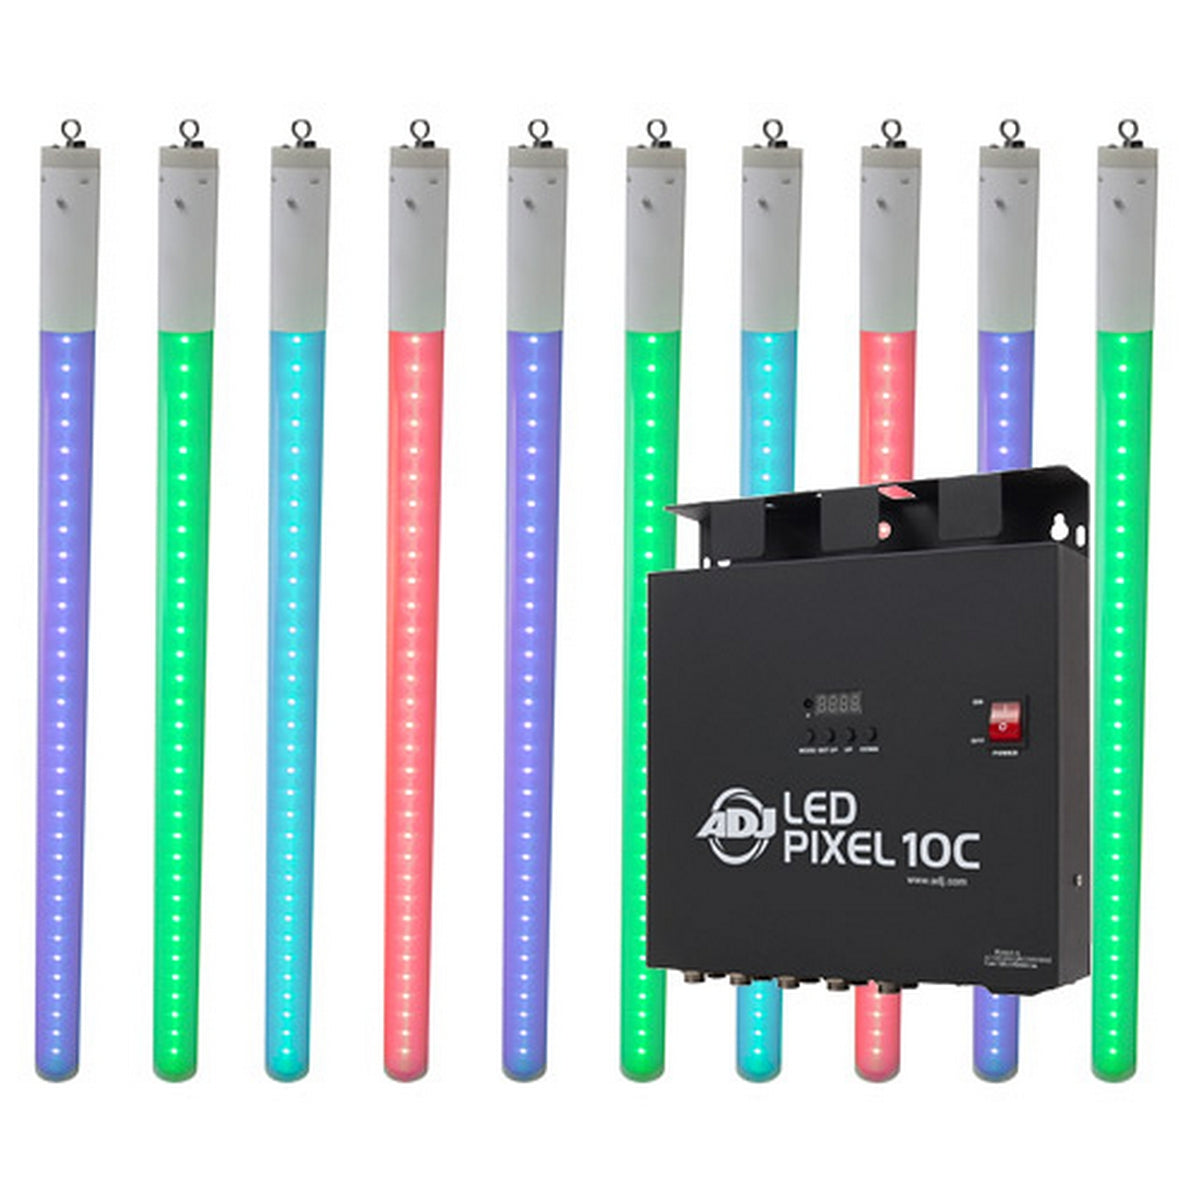 ADJ LED Pixel Tube Sys 10 | 10 x LED Pixel Tube 360 and 1 LED Pixel 10C